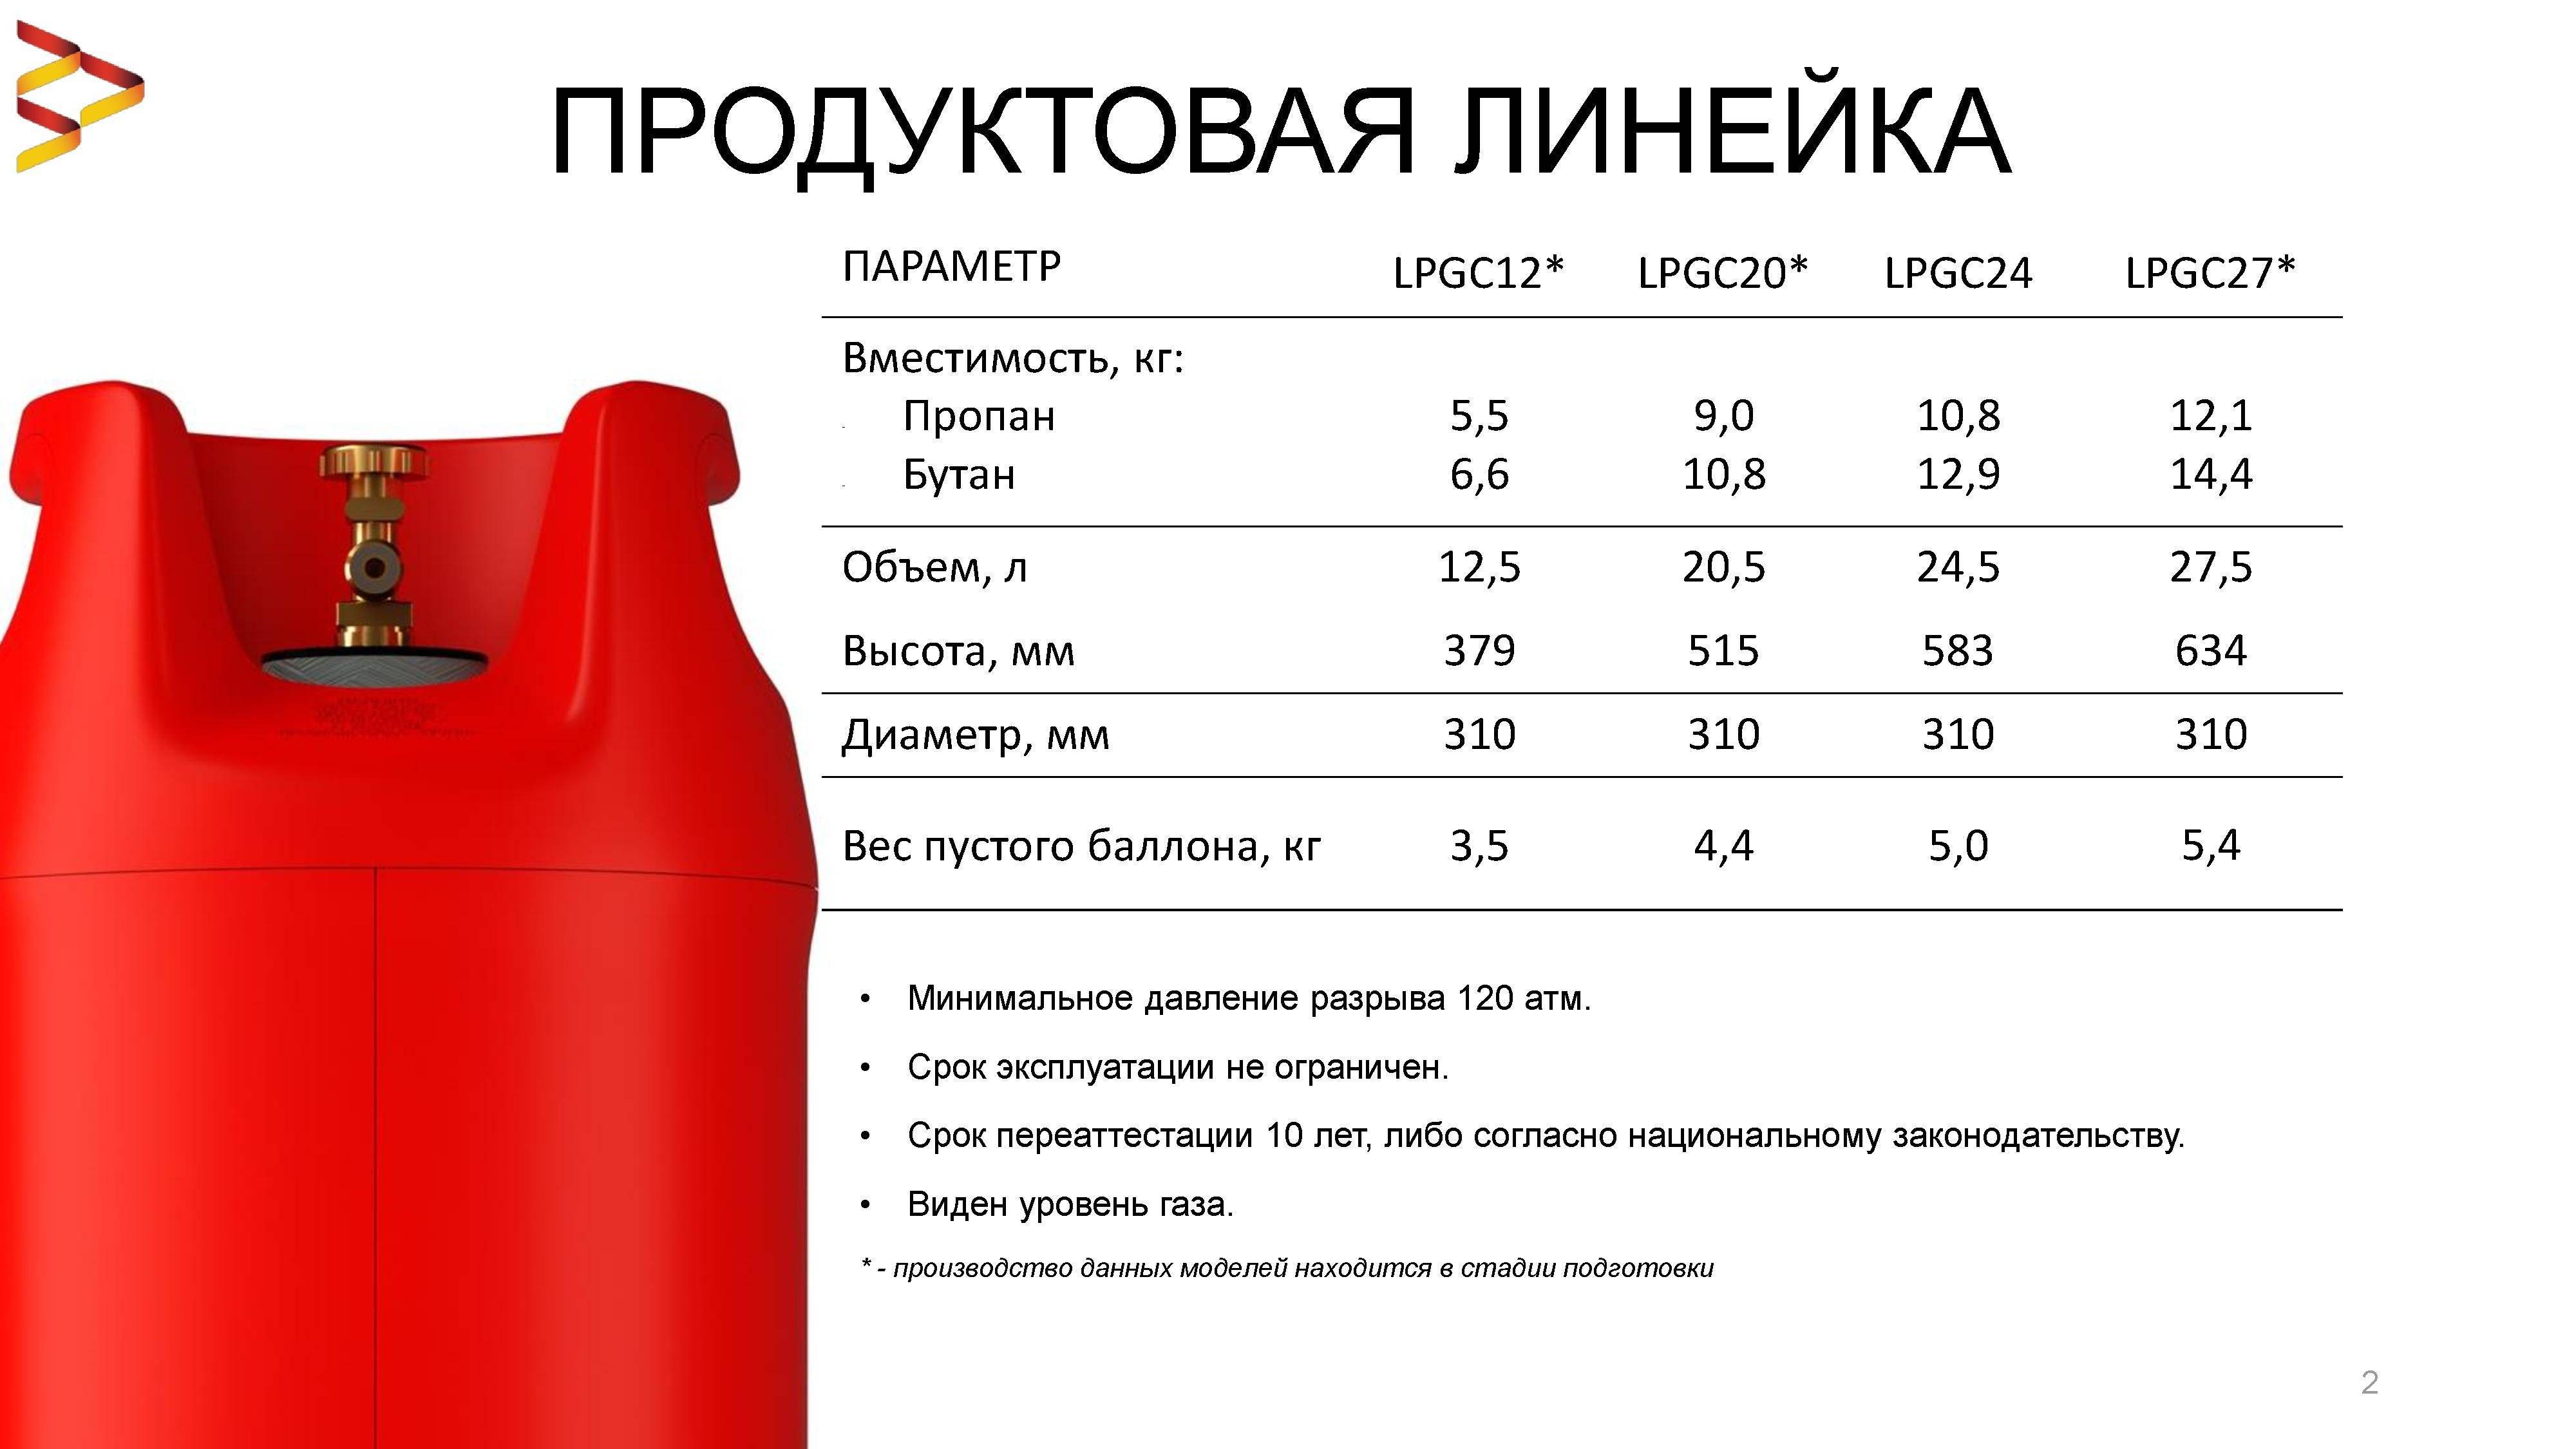 Характеристики типовых 50 литровых газовых баллонов: вес, размеры, сколько кубов газа вмещает